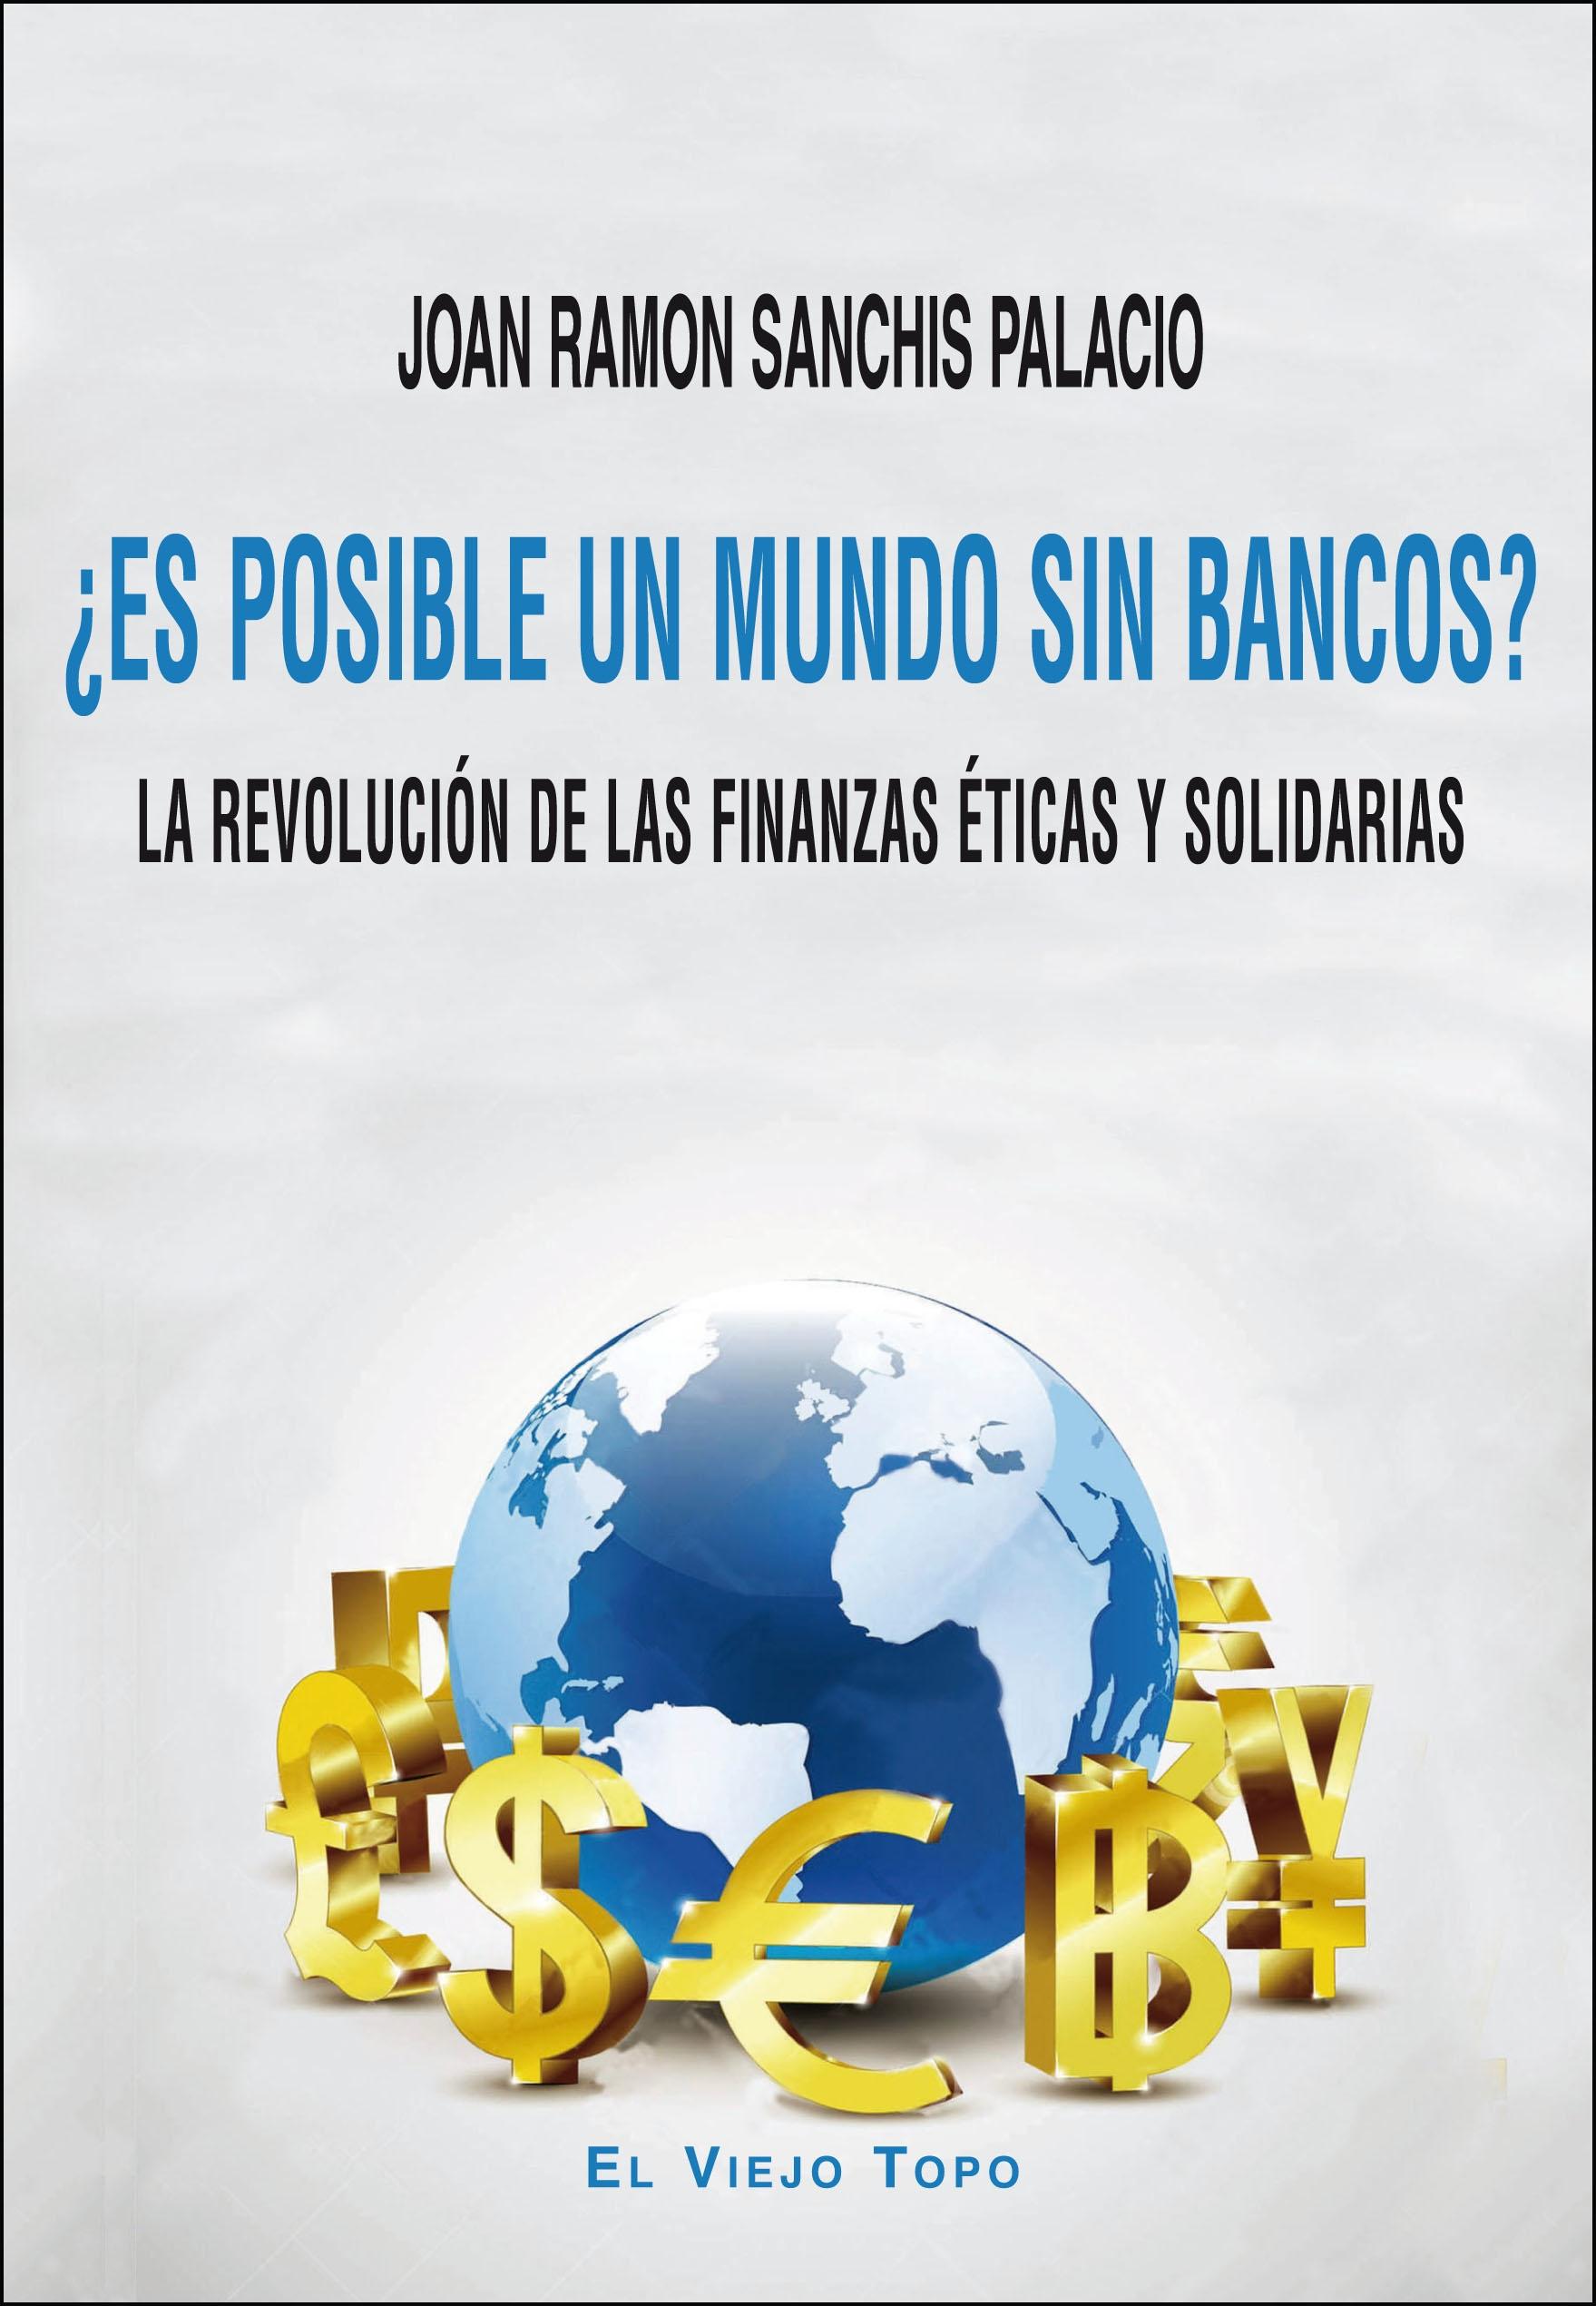 ¿Es Posible un Mundo sin Bancos? "La Revolución de las Finanzas Éticas y Solidarias". 